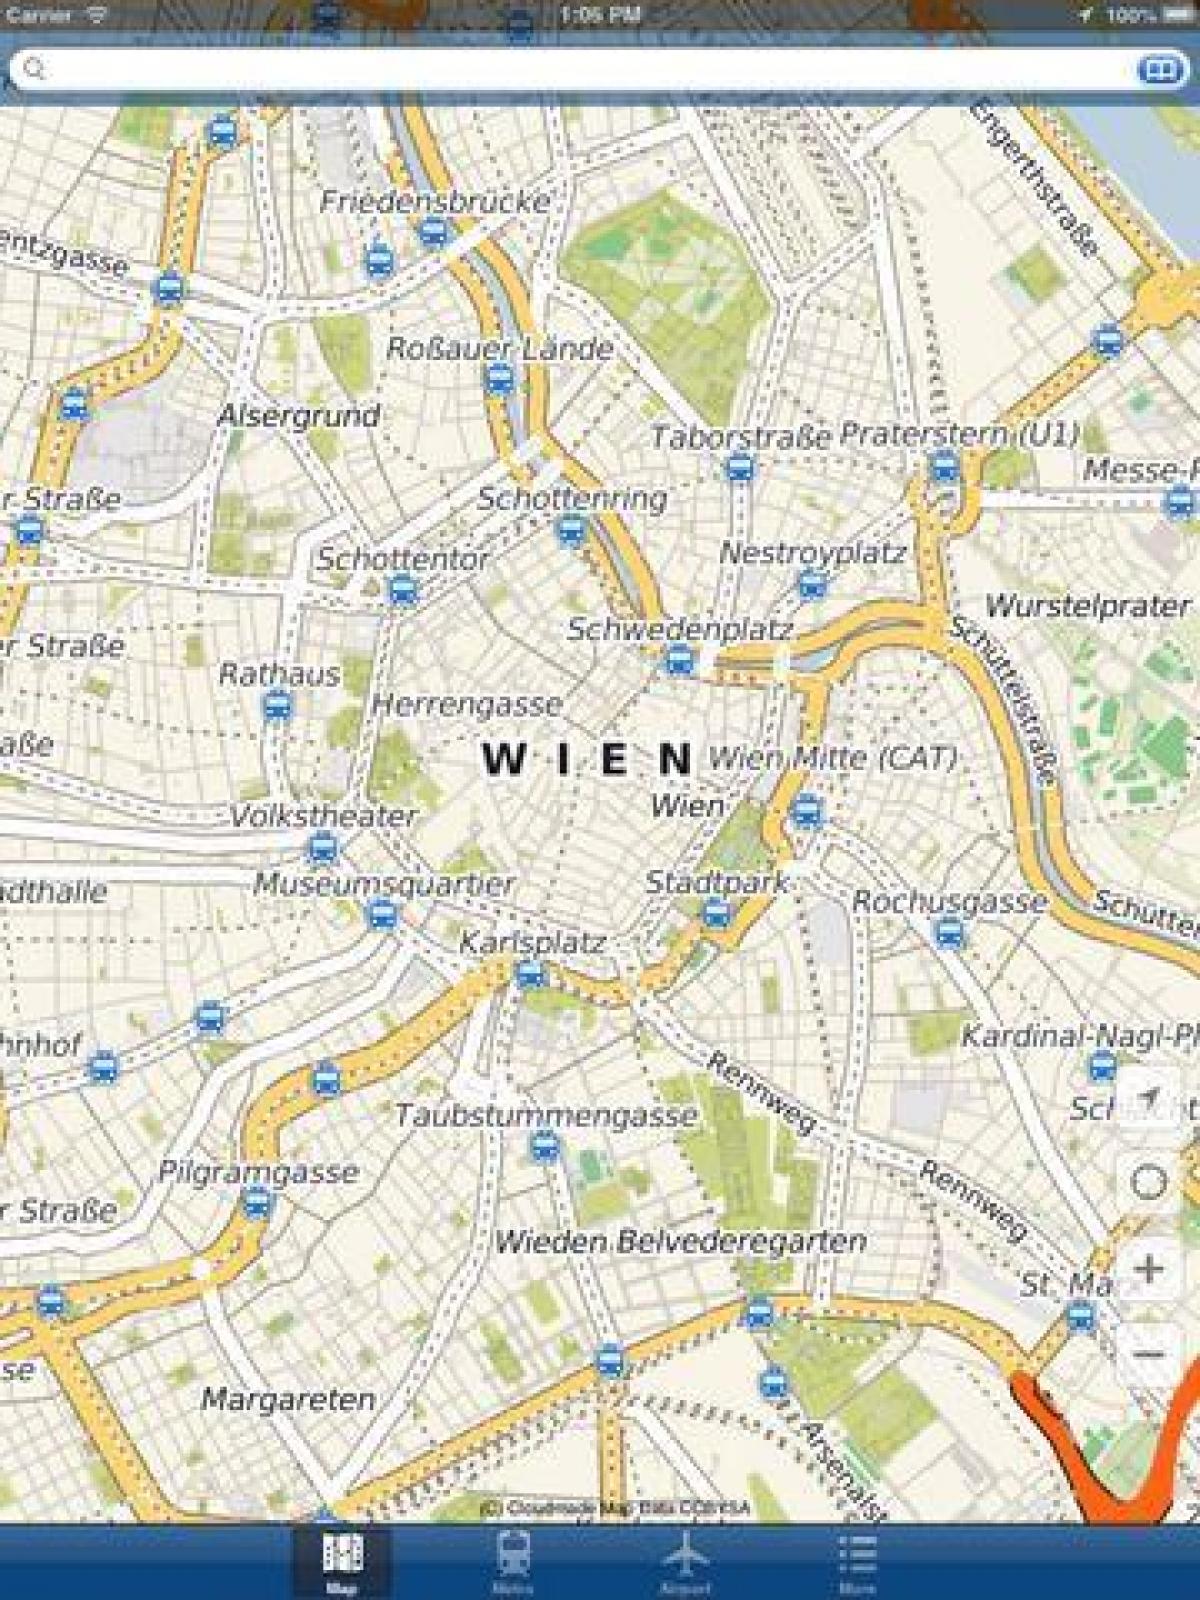 Виена мапата стан